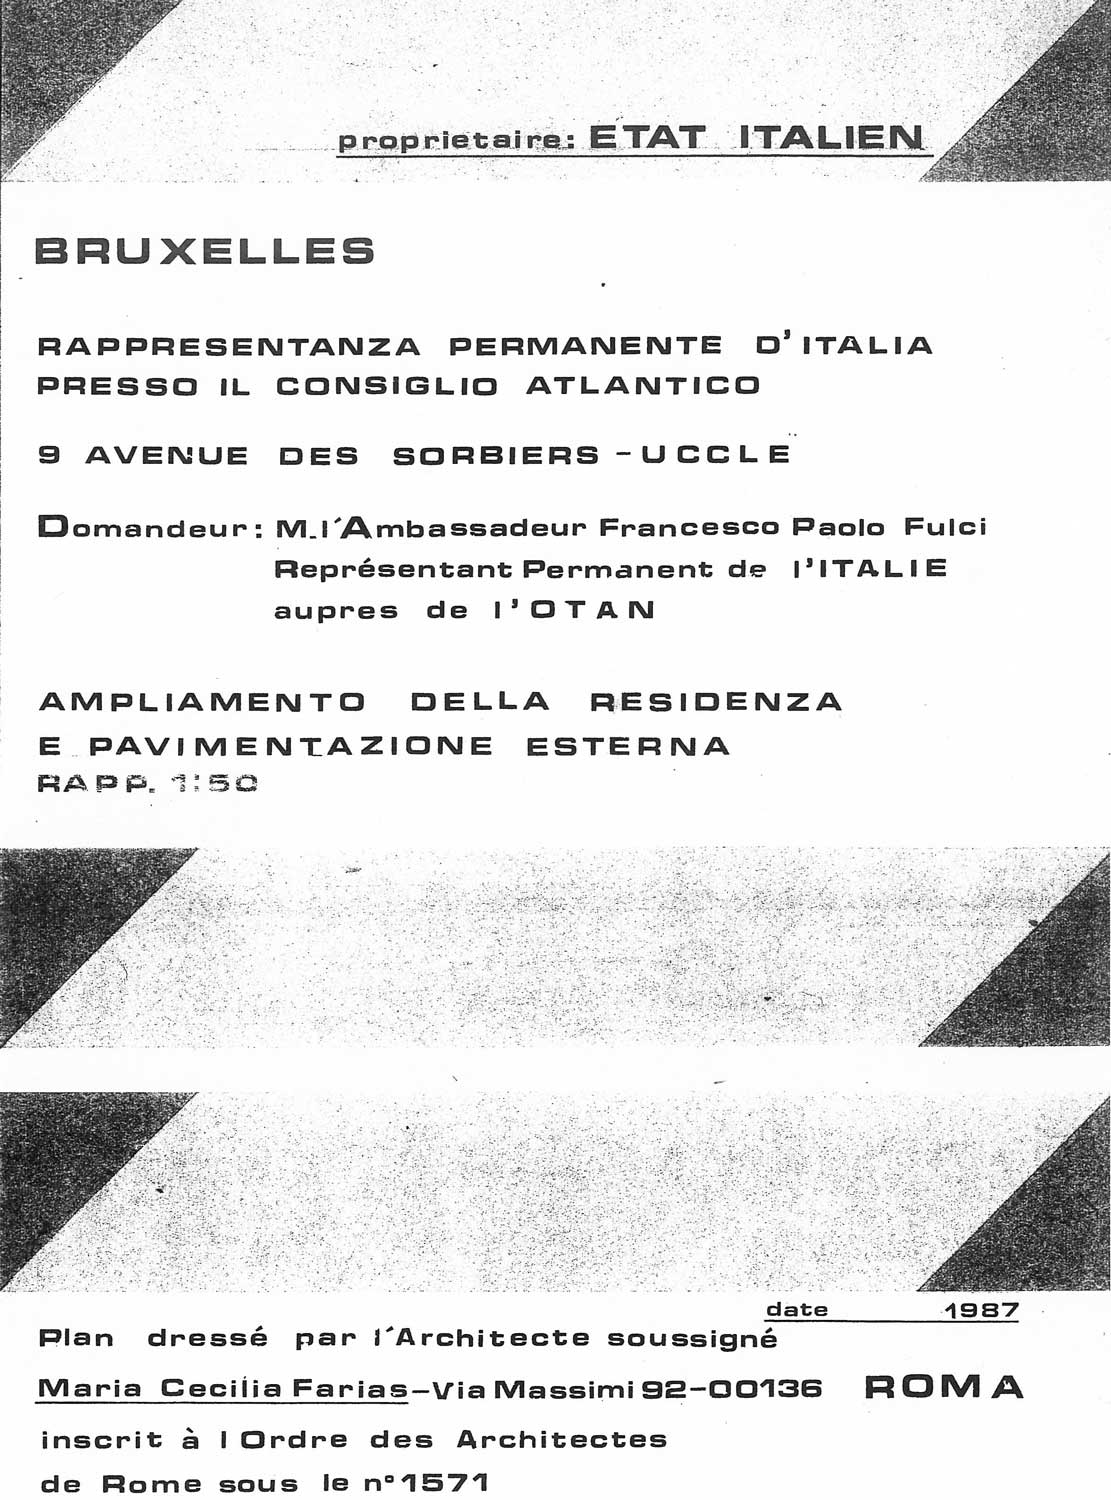 13 - Ampliamento della residenza dell’ambasciatore italiano a Bruxelles - Dati tecnici